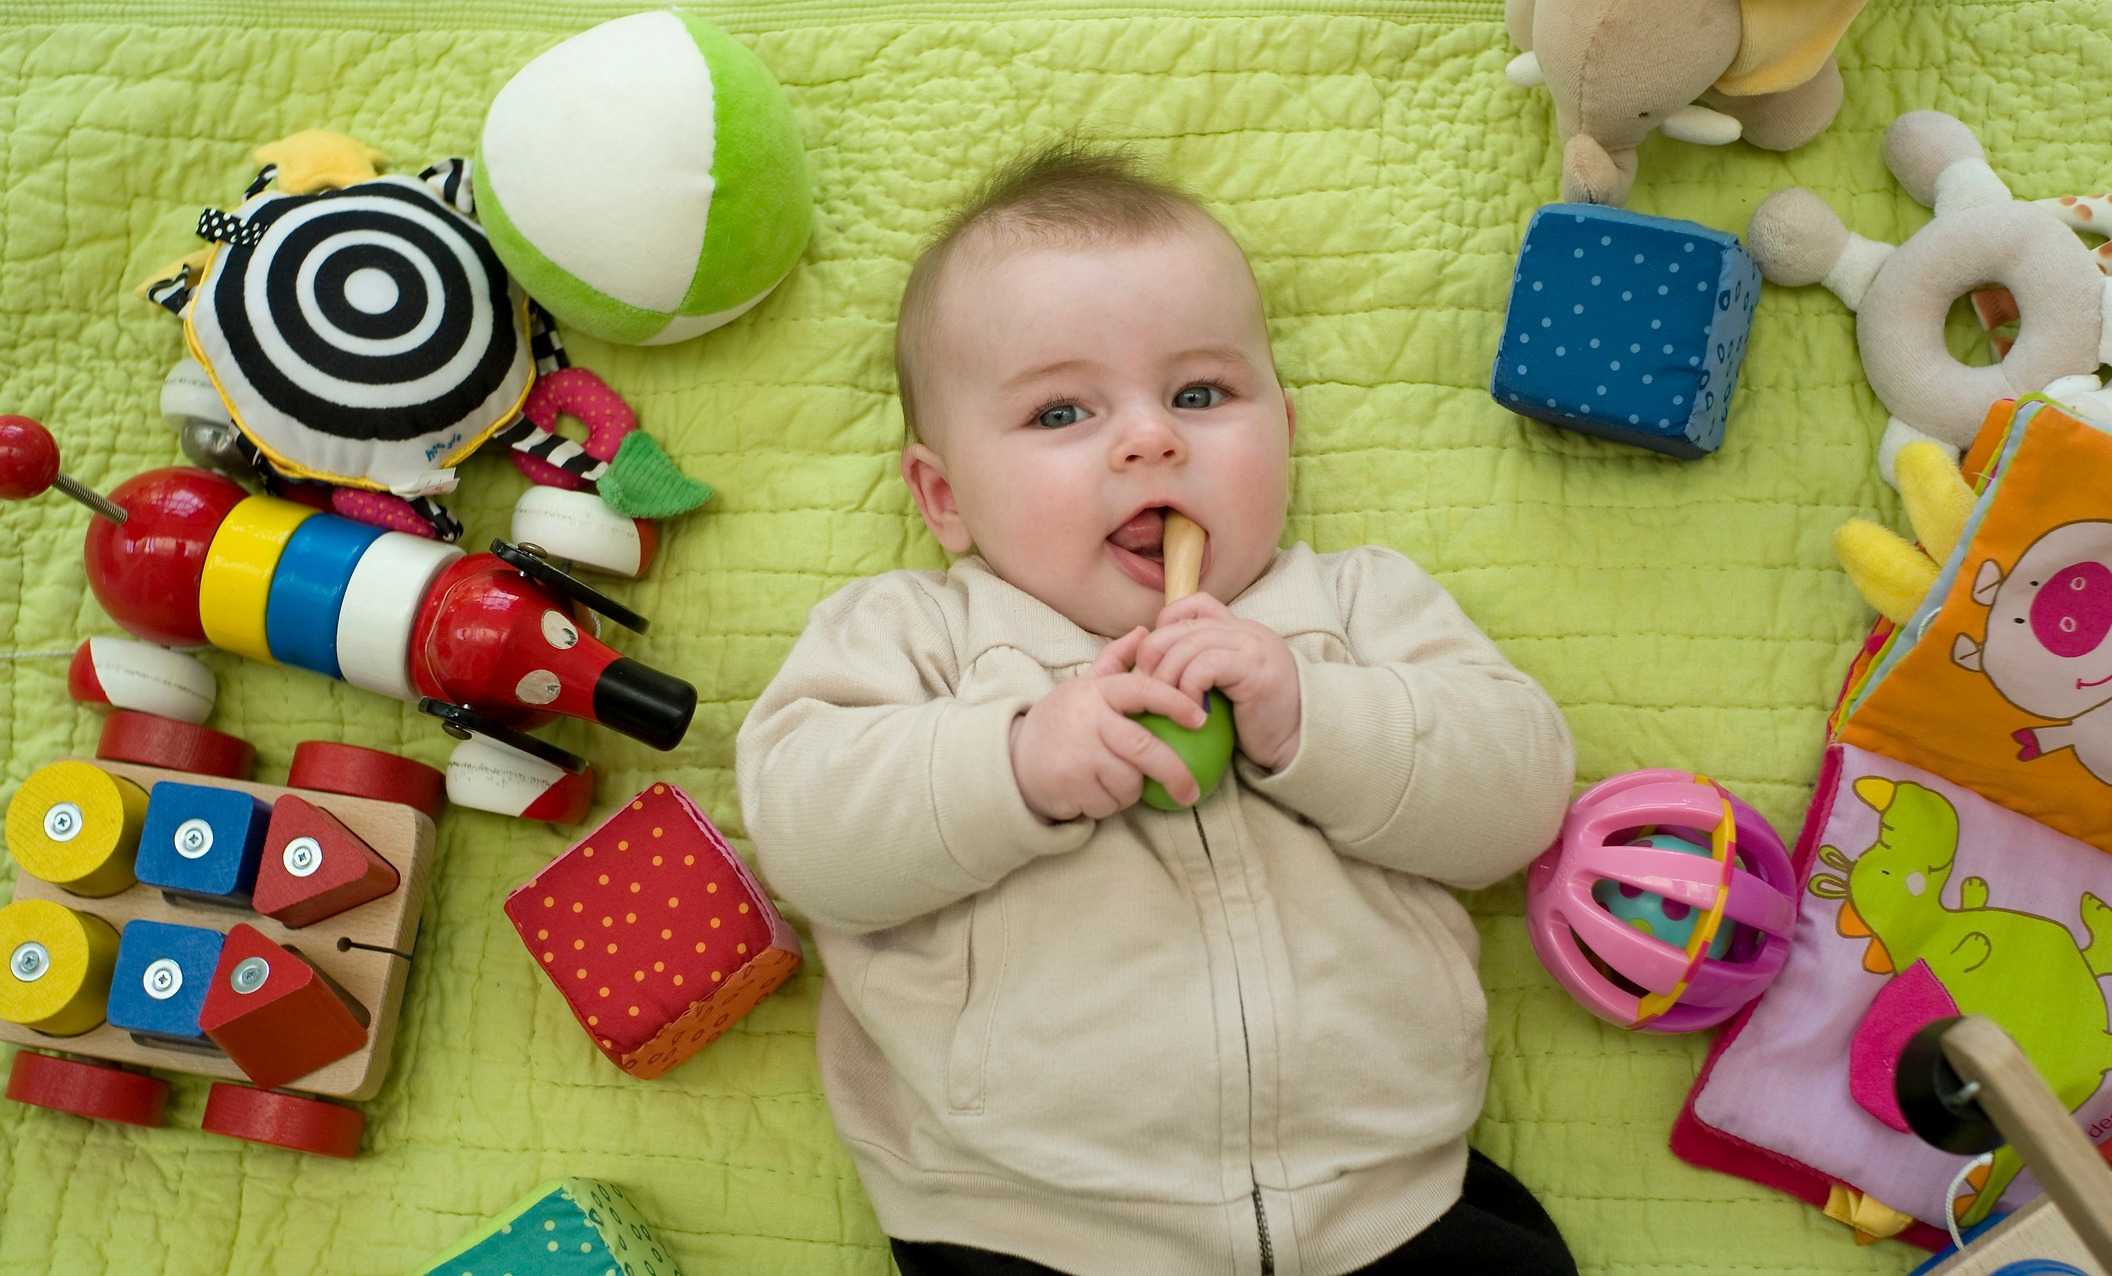 Меню ребенка в 1 год: основа рациона и принципы питания